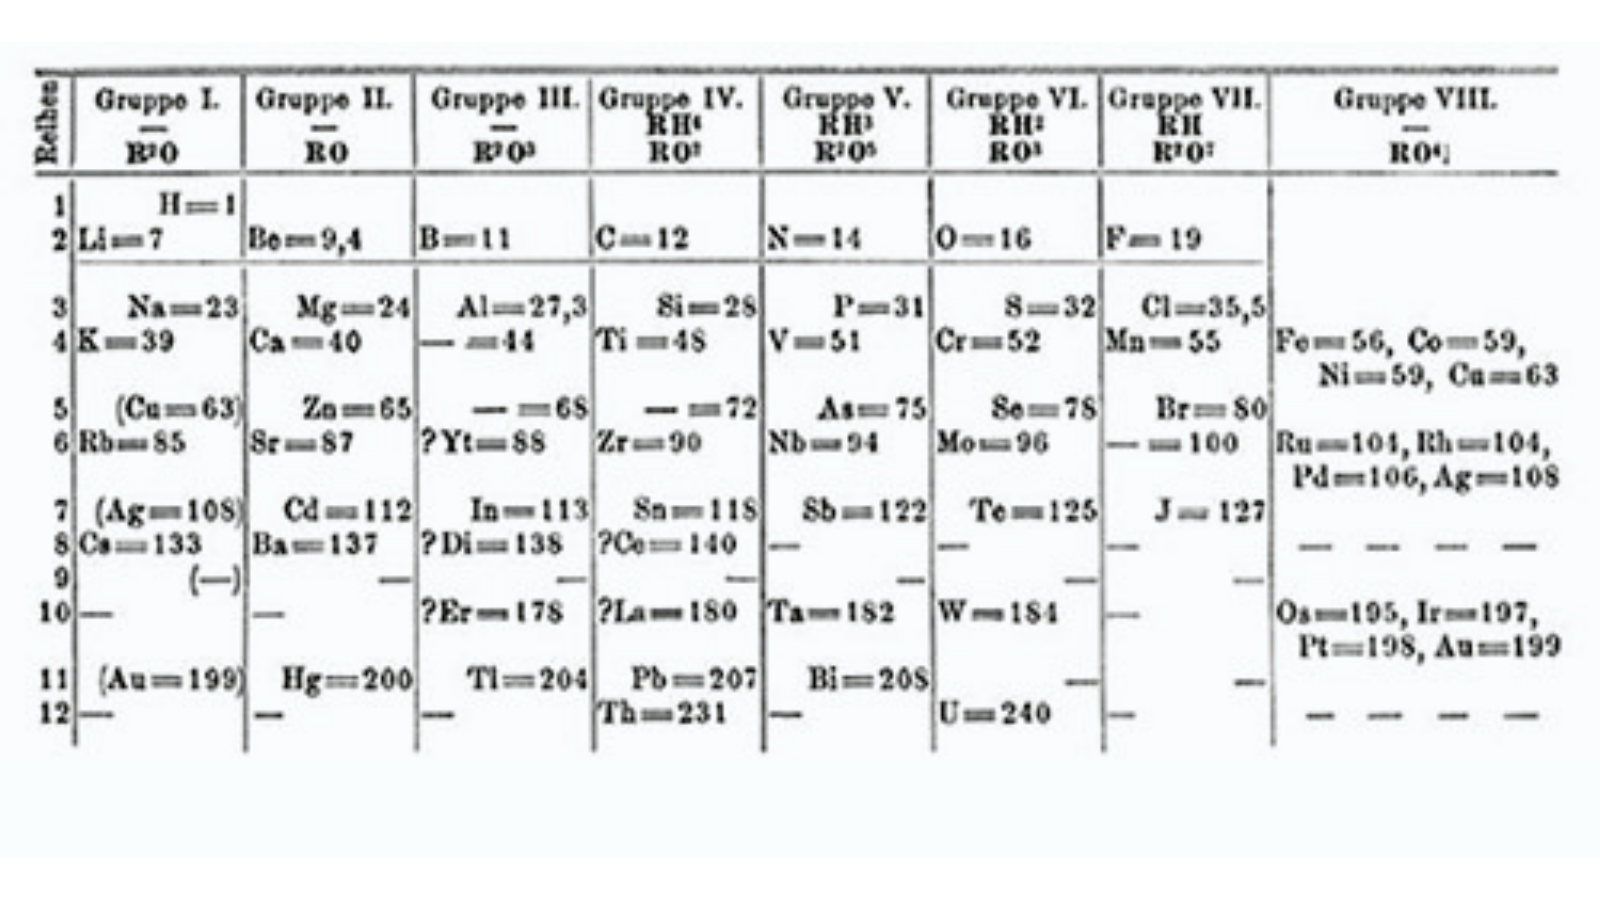 La Tavola periodica di Mendeleev